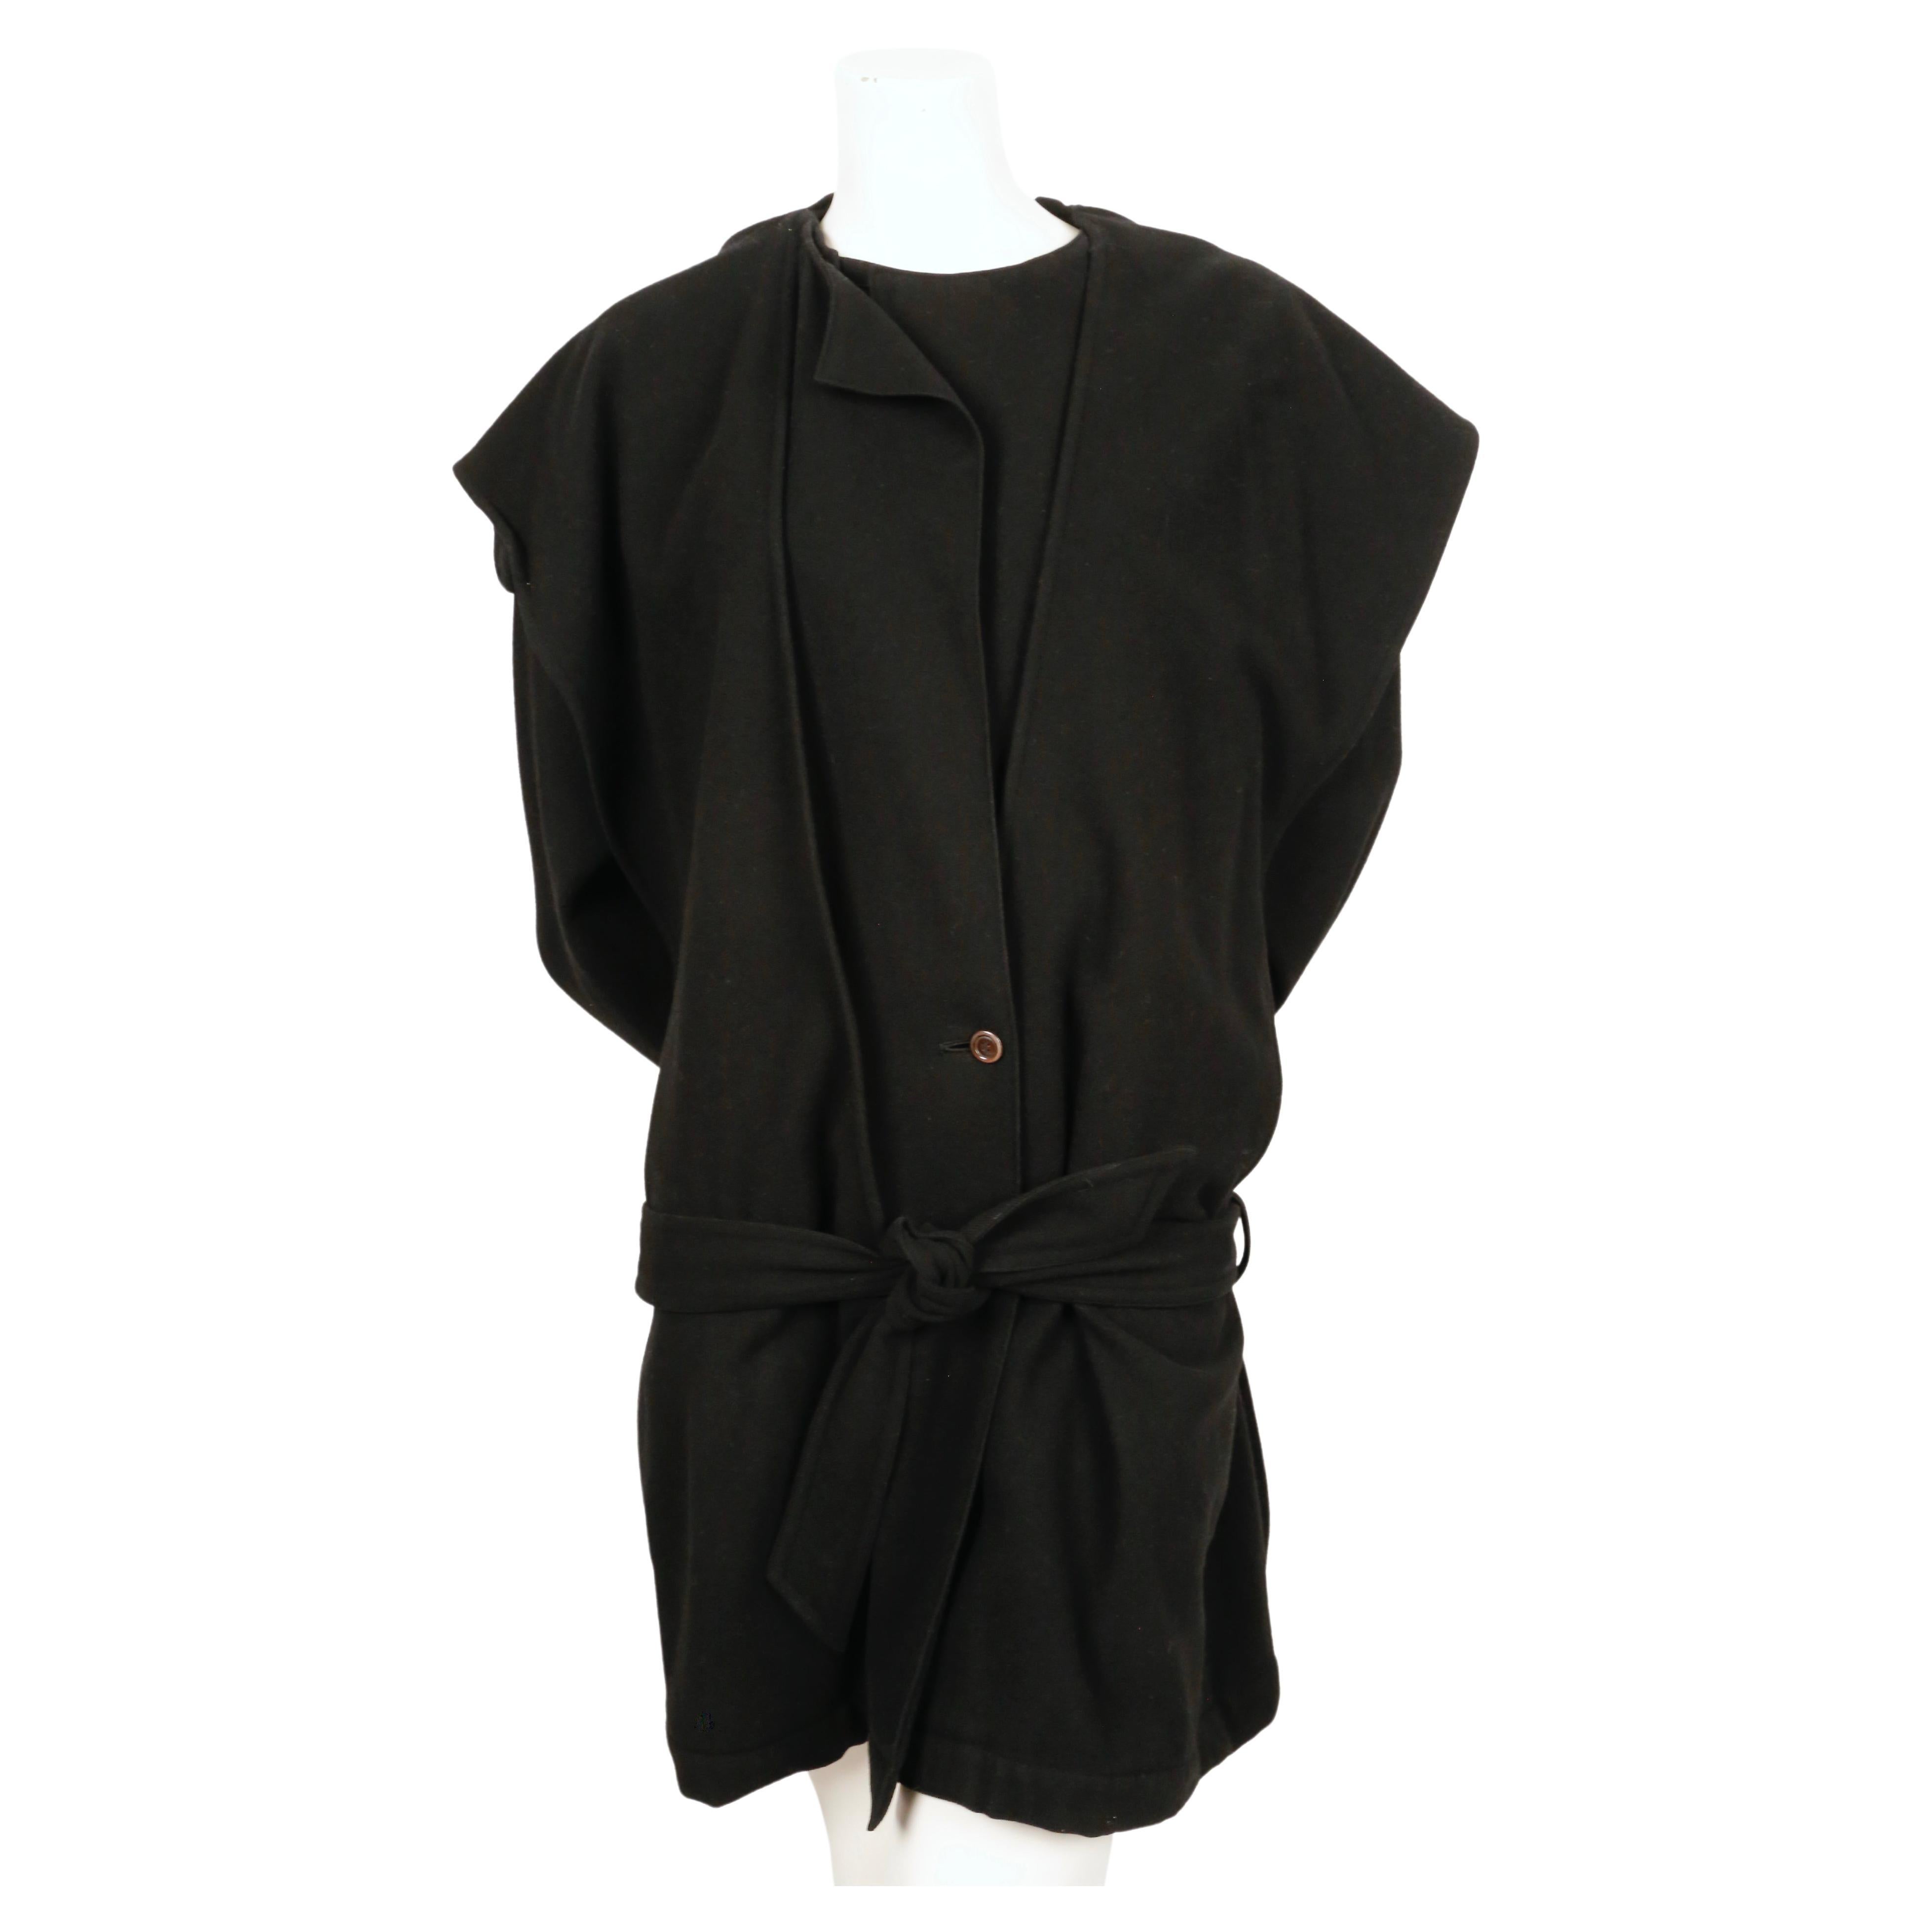 Manteau en laine noire avec une capuche drapée et un lien à la taille conçu par Issey Miyake datant exactement de 1981 tel qu'il a été porté par Iman sur le défilé. Le manteau a une coupe très particulière. Taille 'M'. Mesures approximatives :